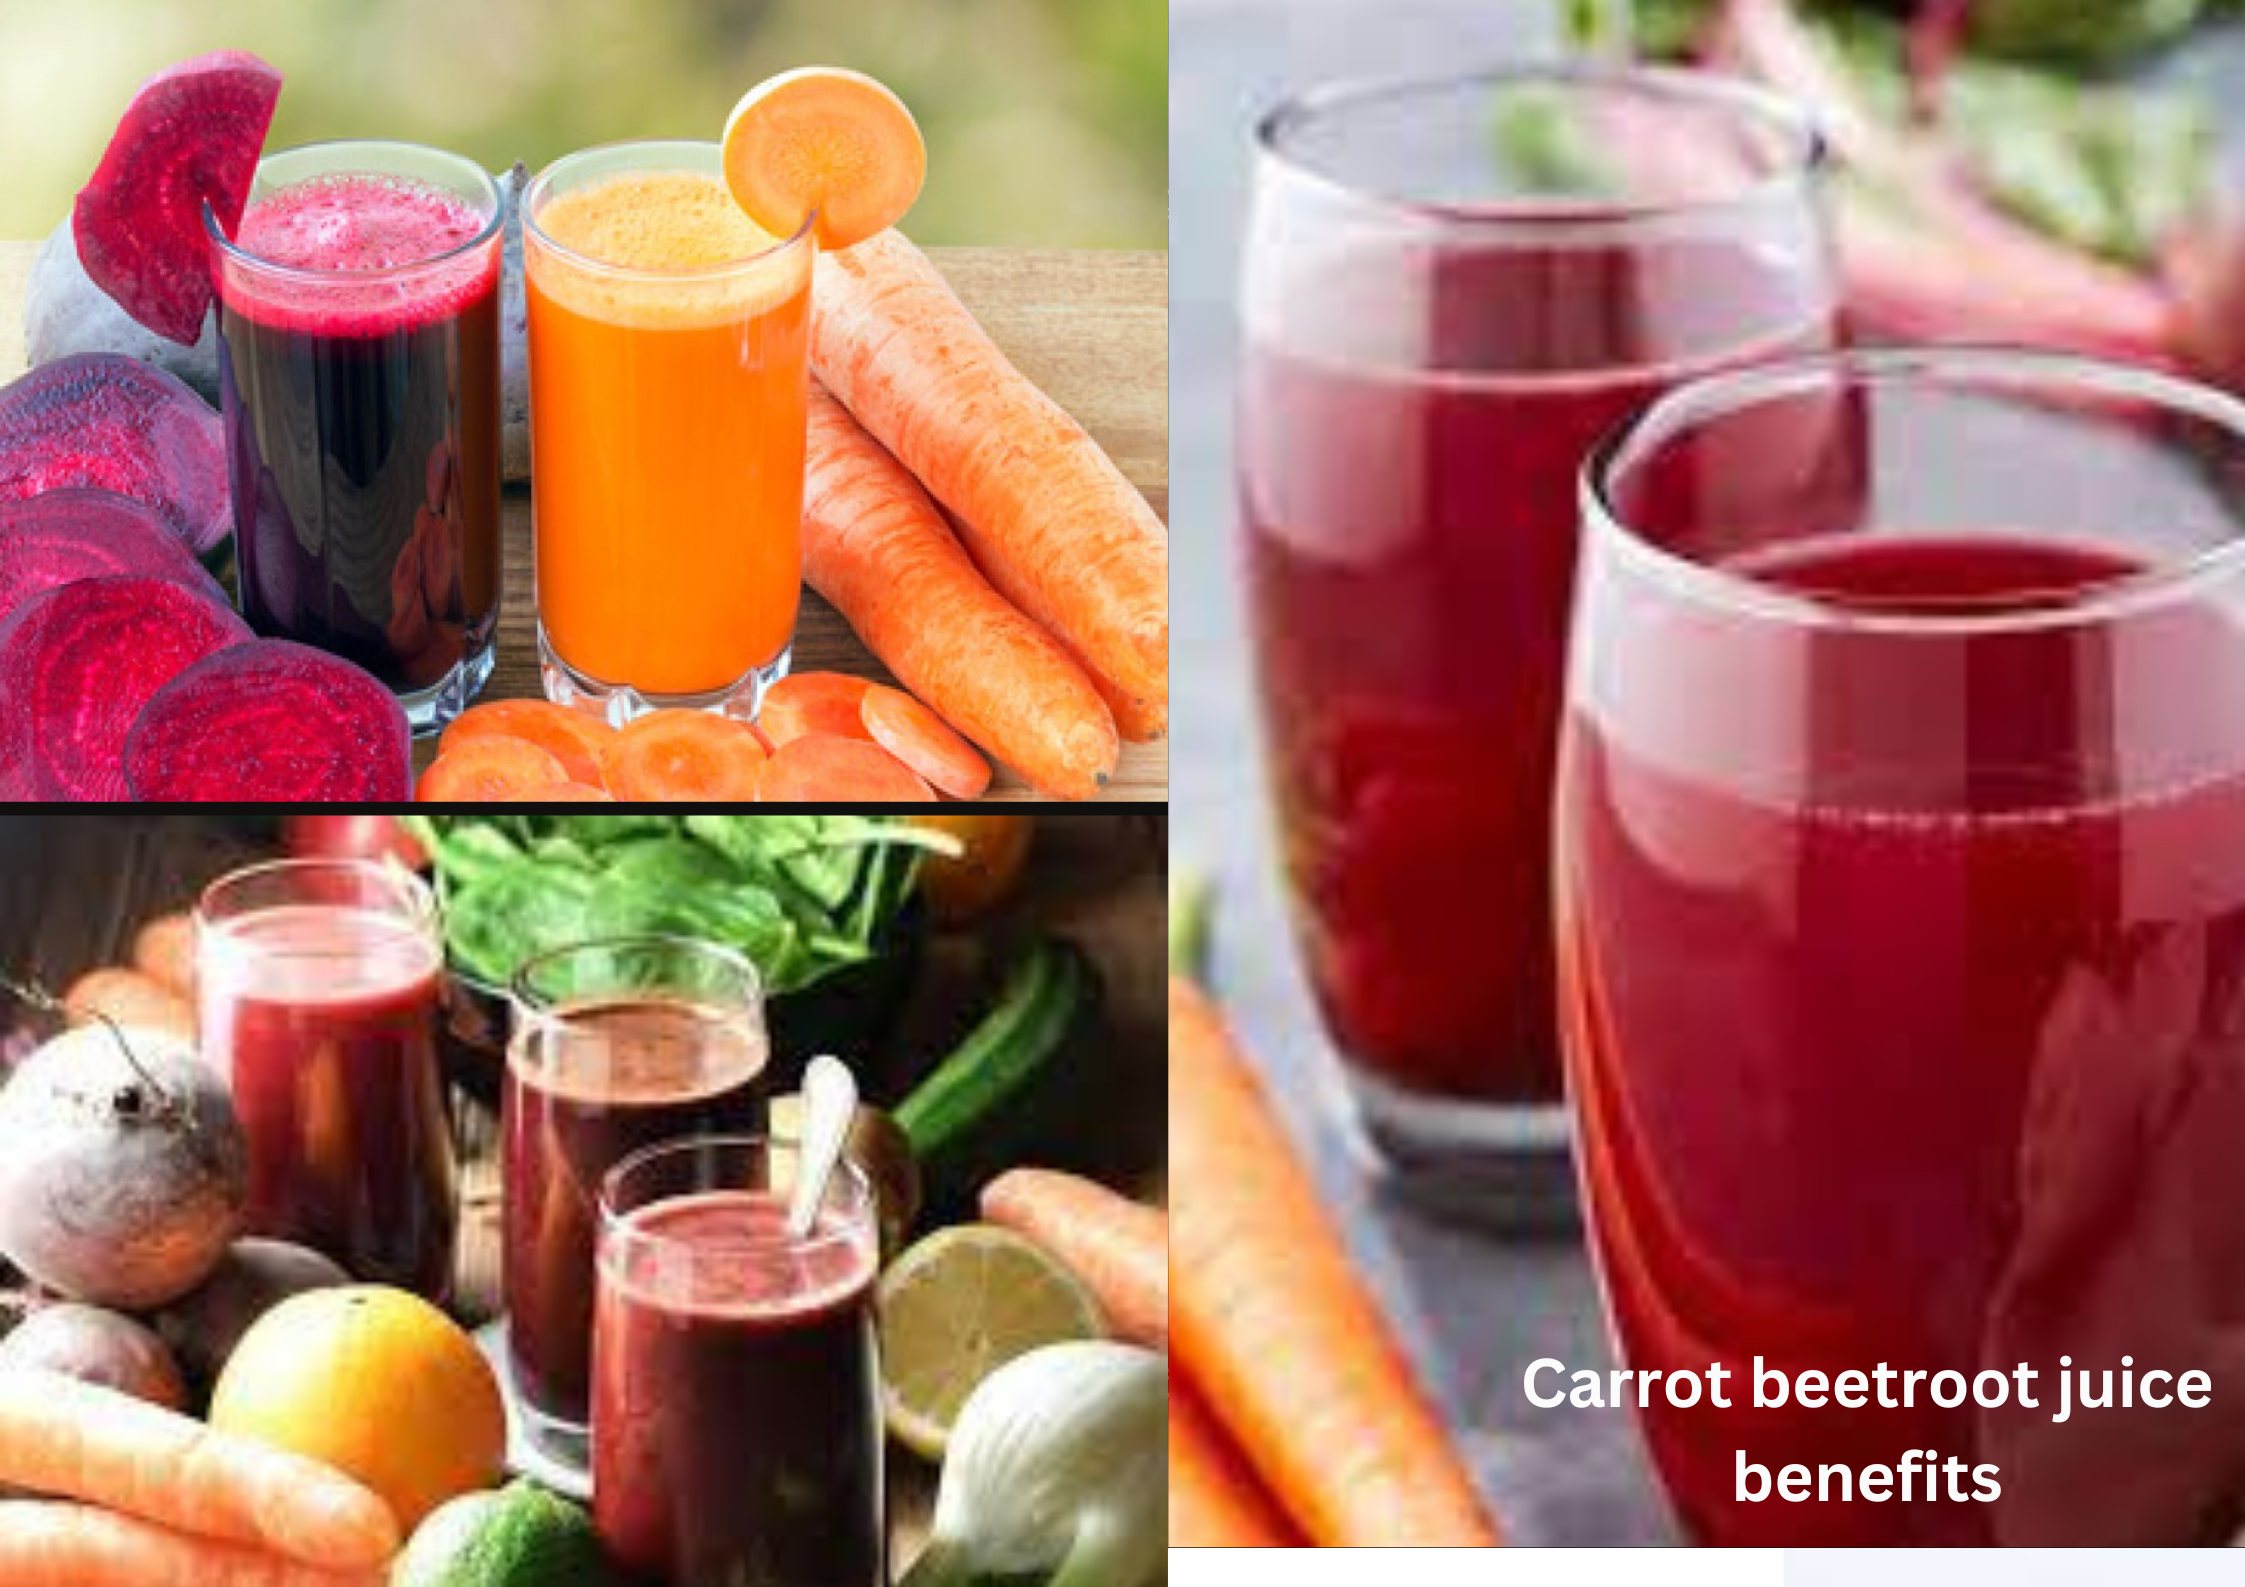 Carrot beetroot juice benefits